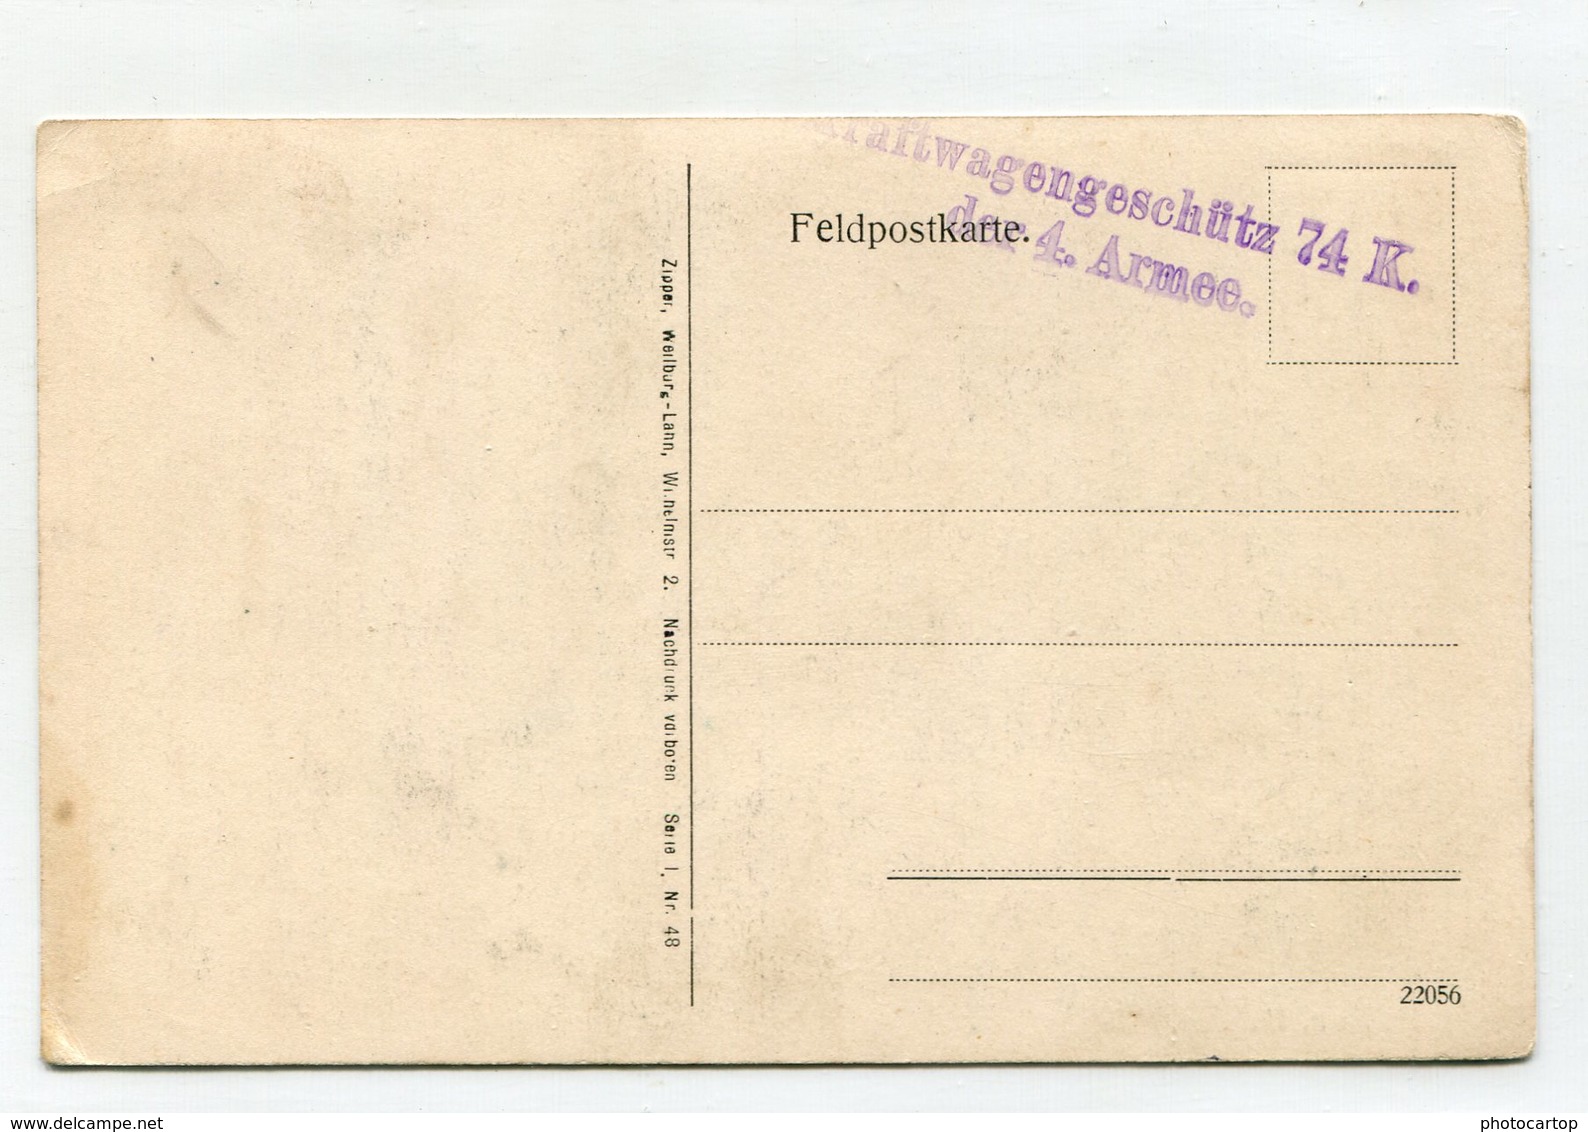 PELIKAN-Cimetiere-Carte Allemande-Periode Guerre 14-18-1WK-Belgien- - Lichtervelde